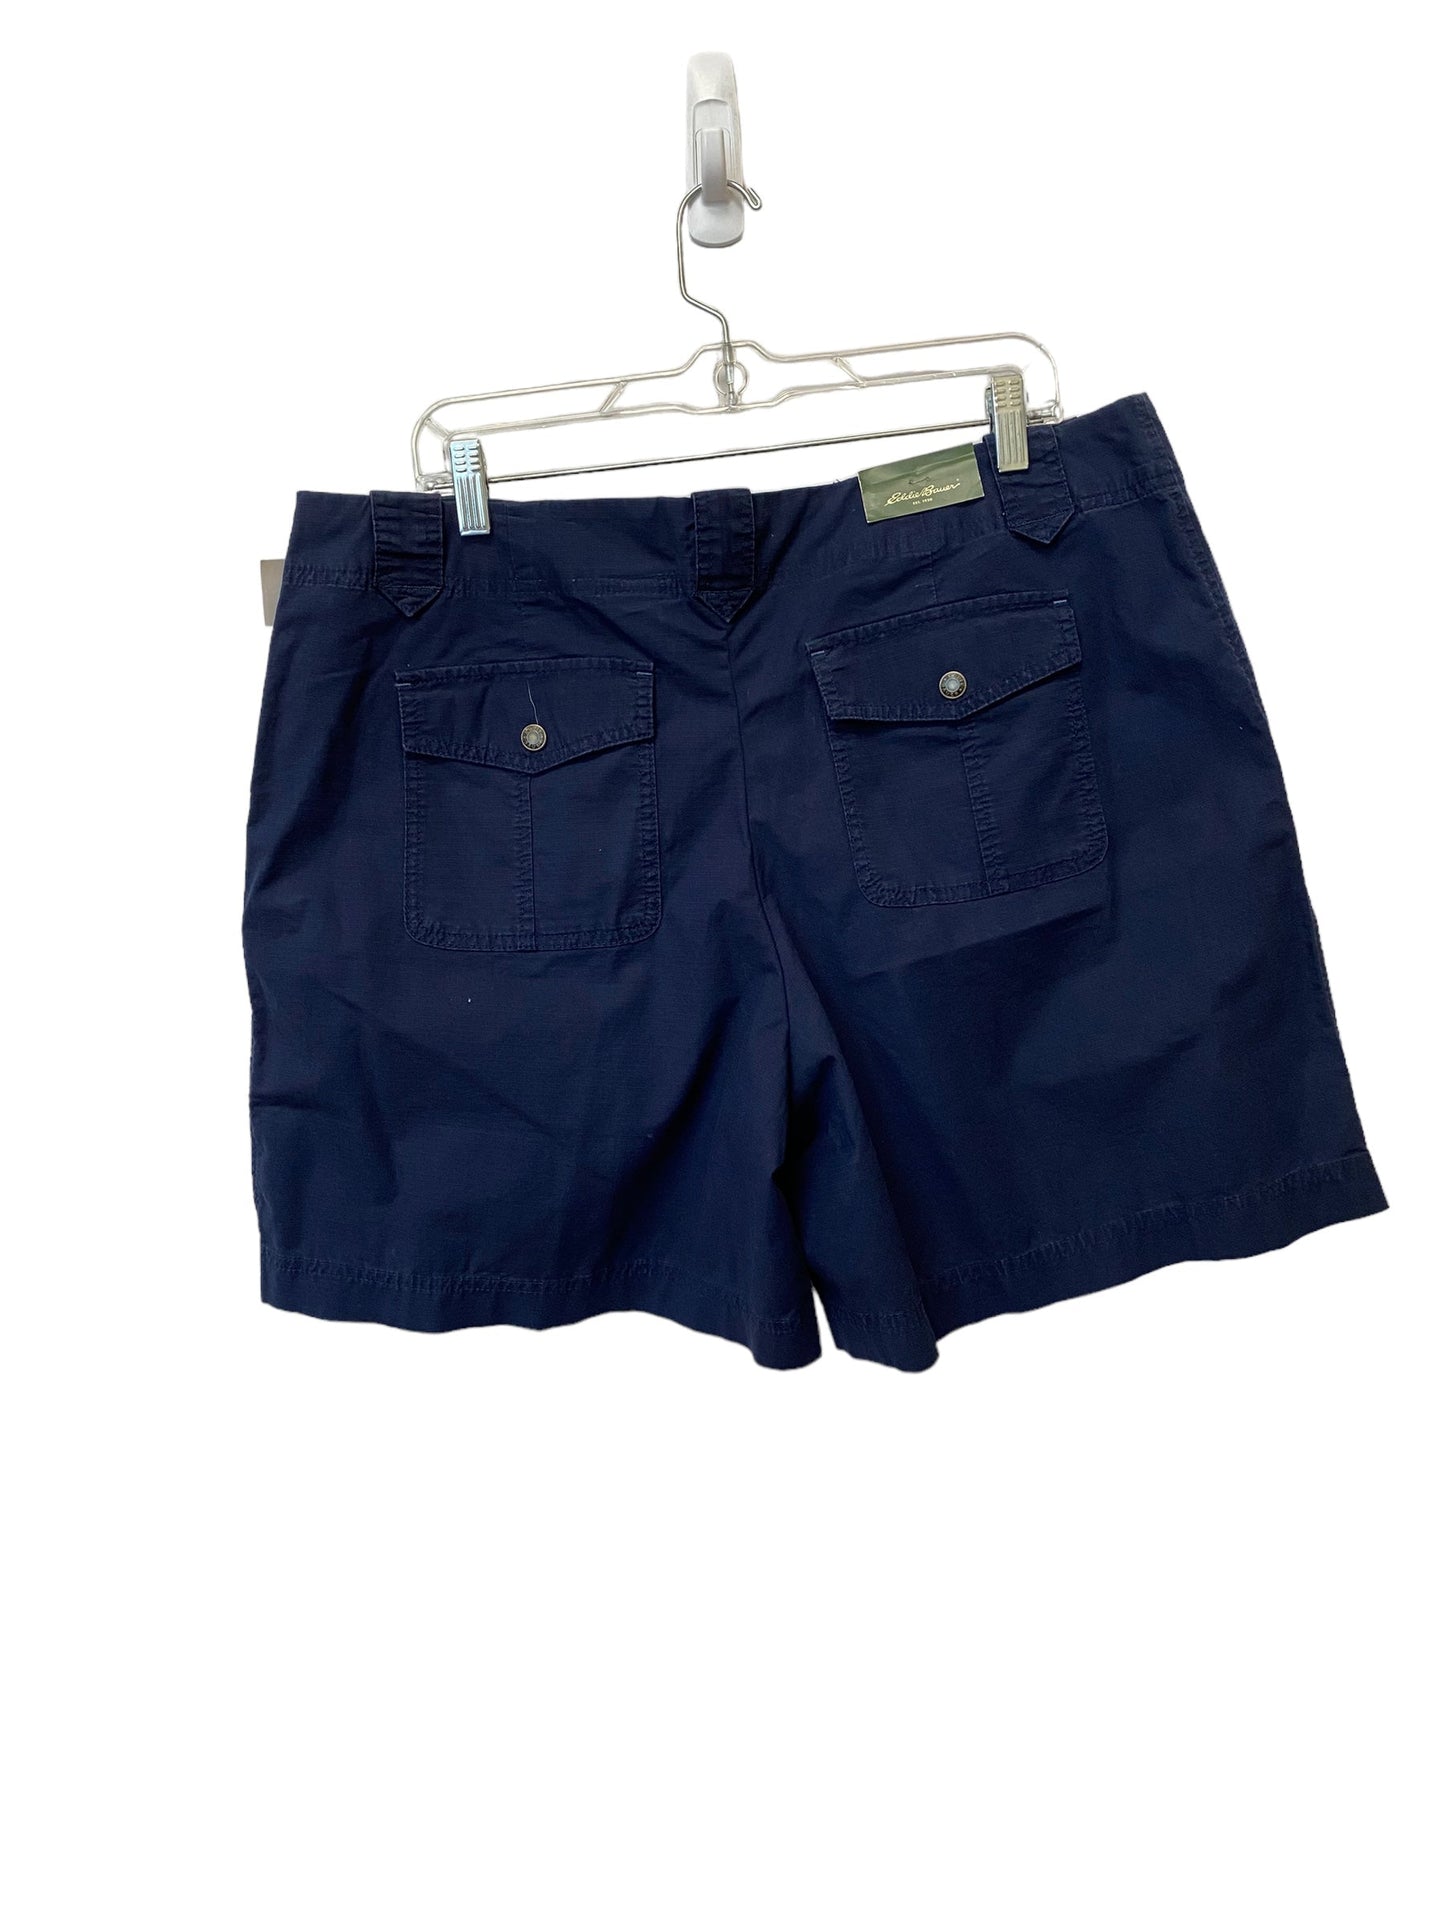 Shorts By Eddie Bauer  Size: 18